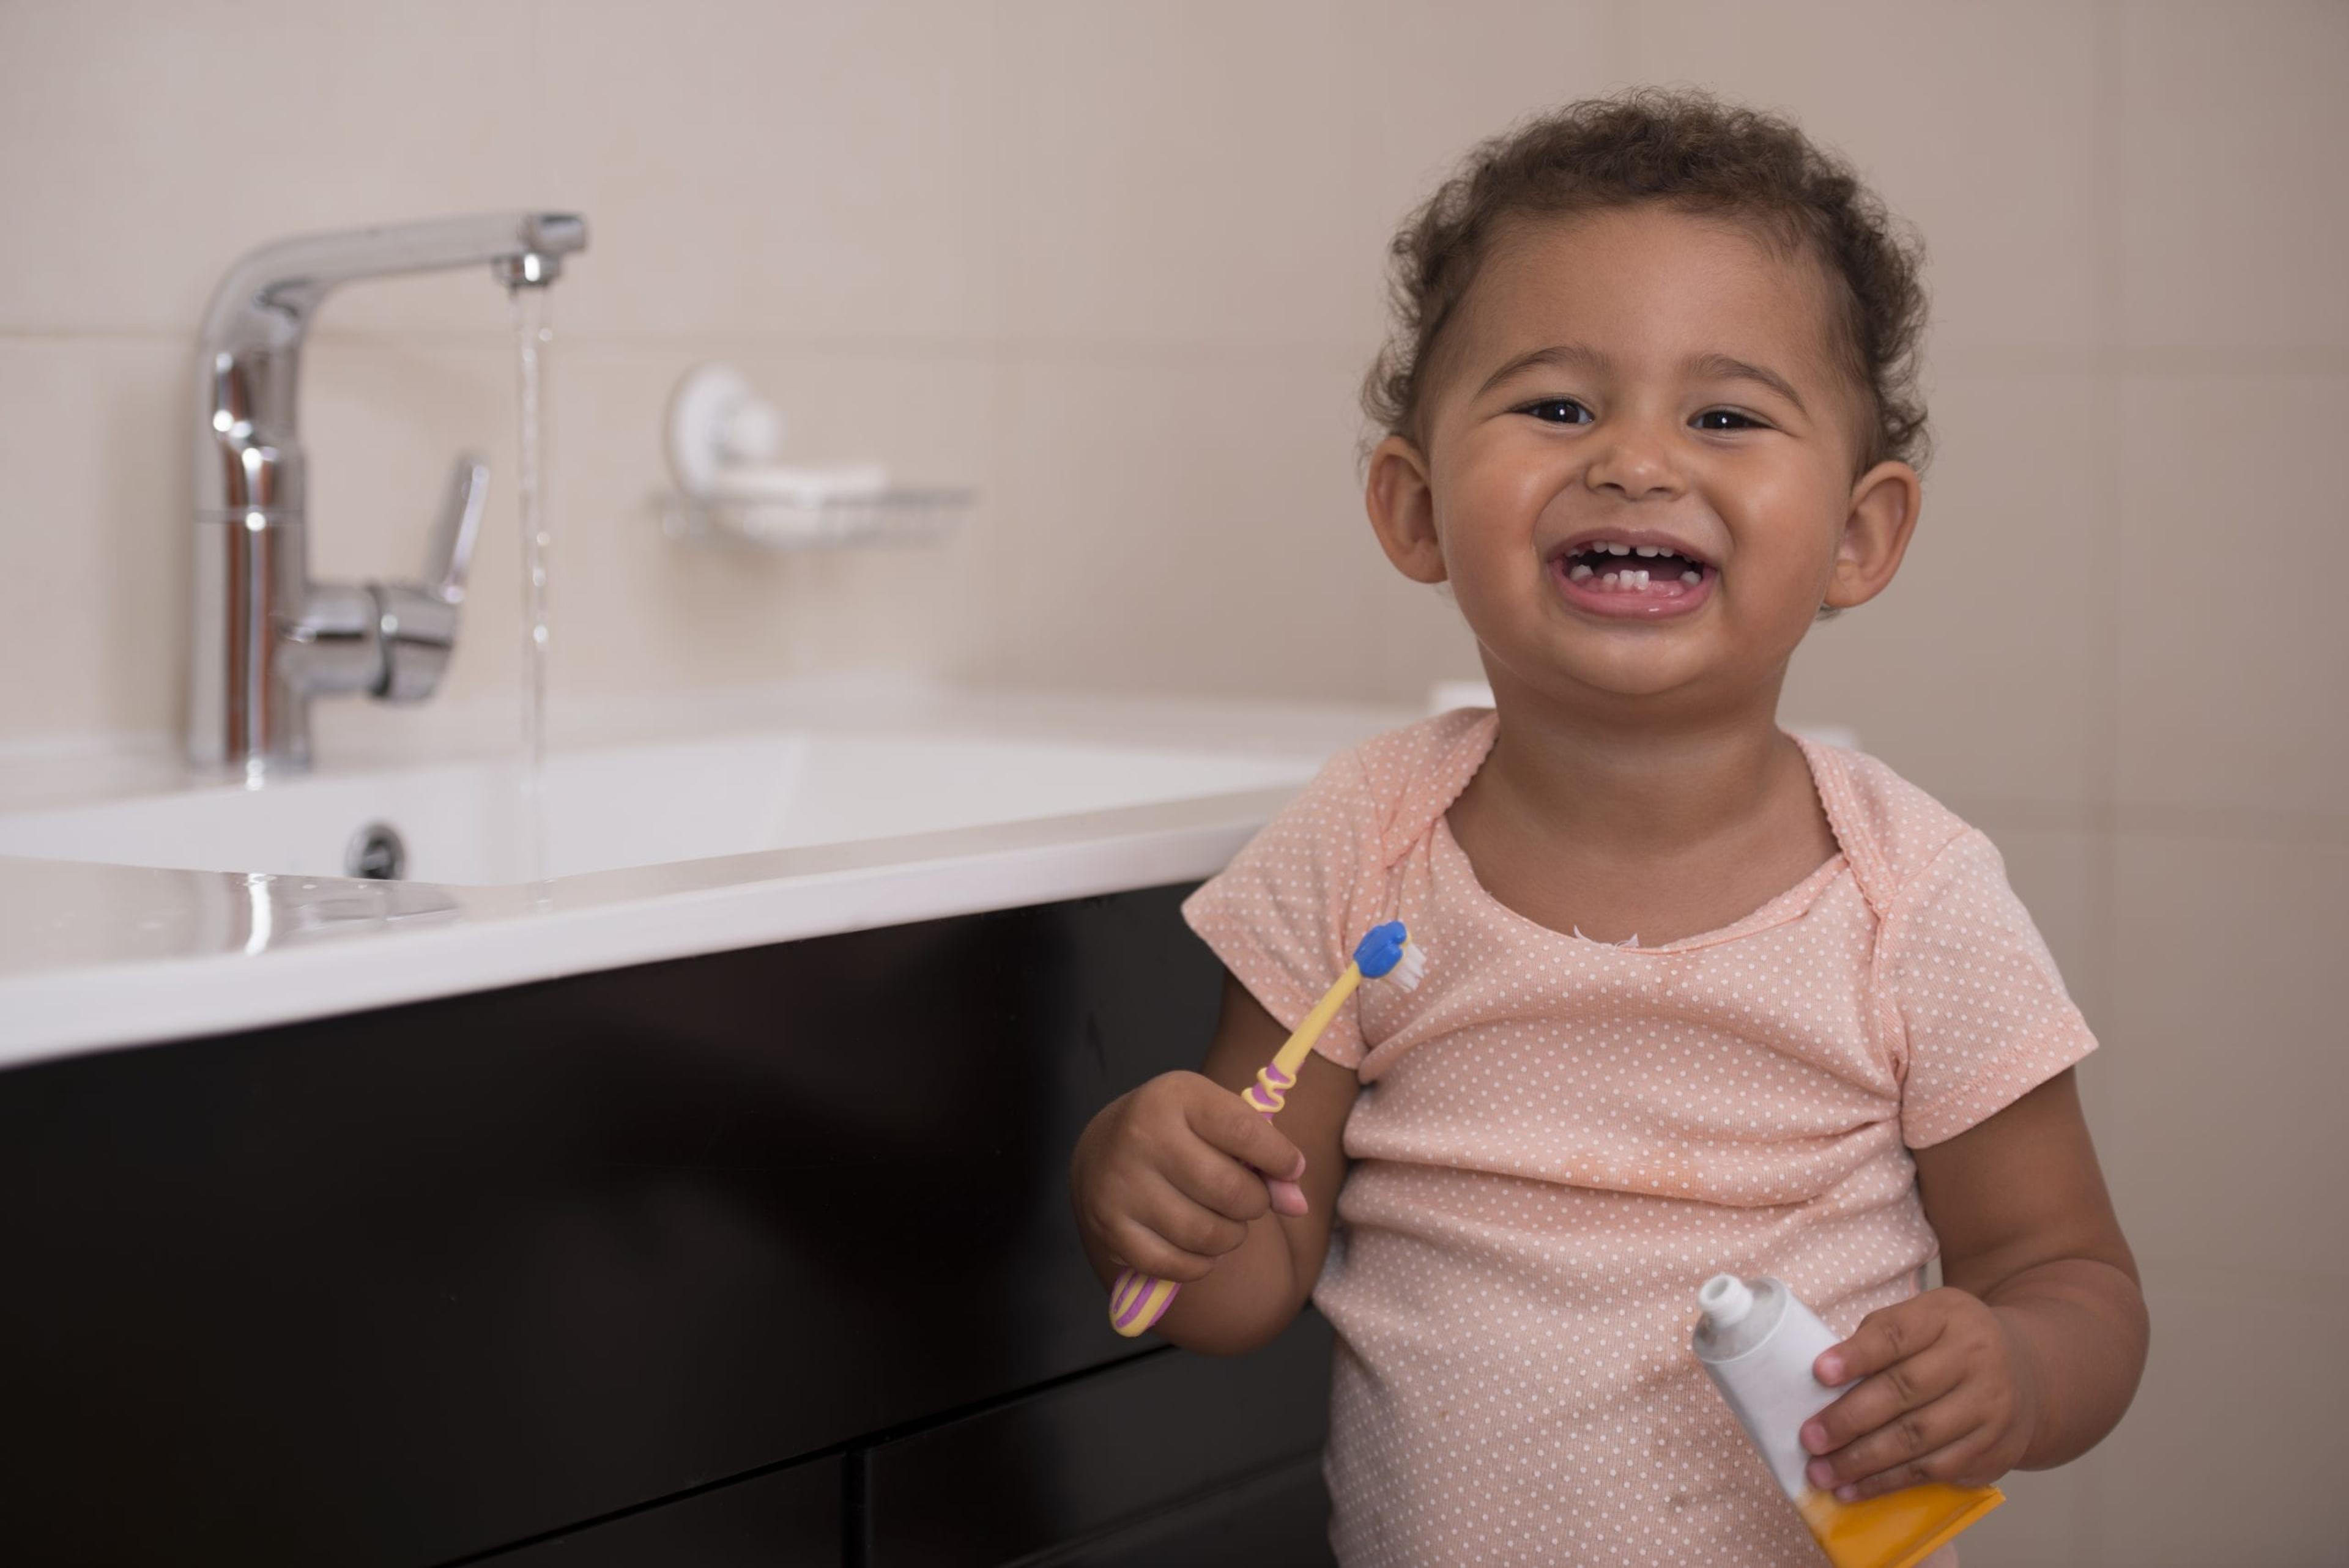 Image of a toddler brushing teeth.